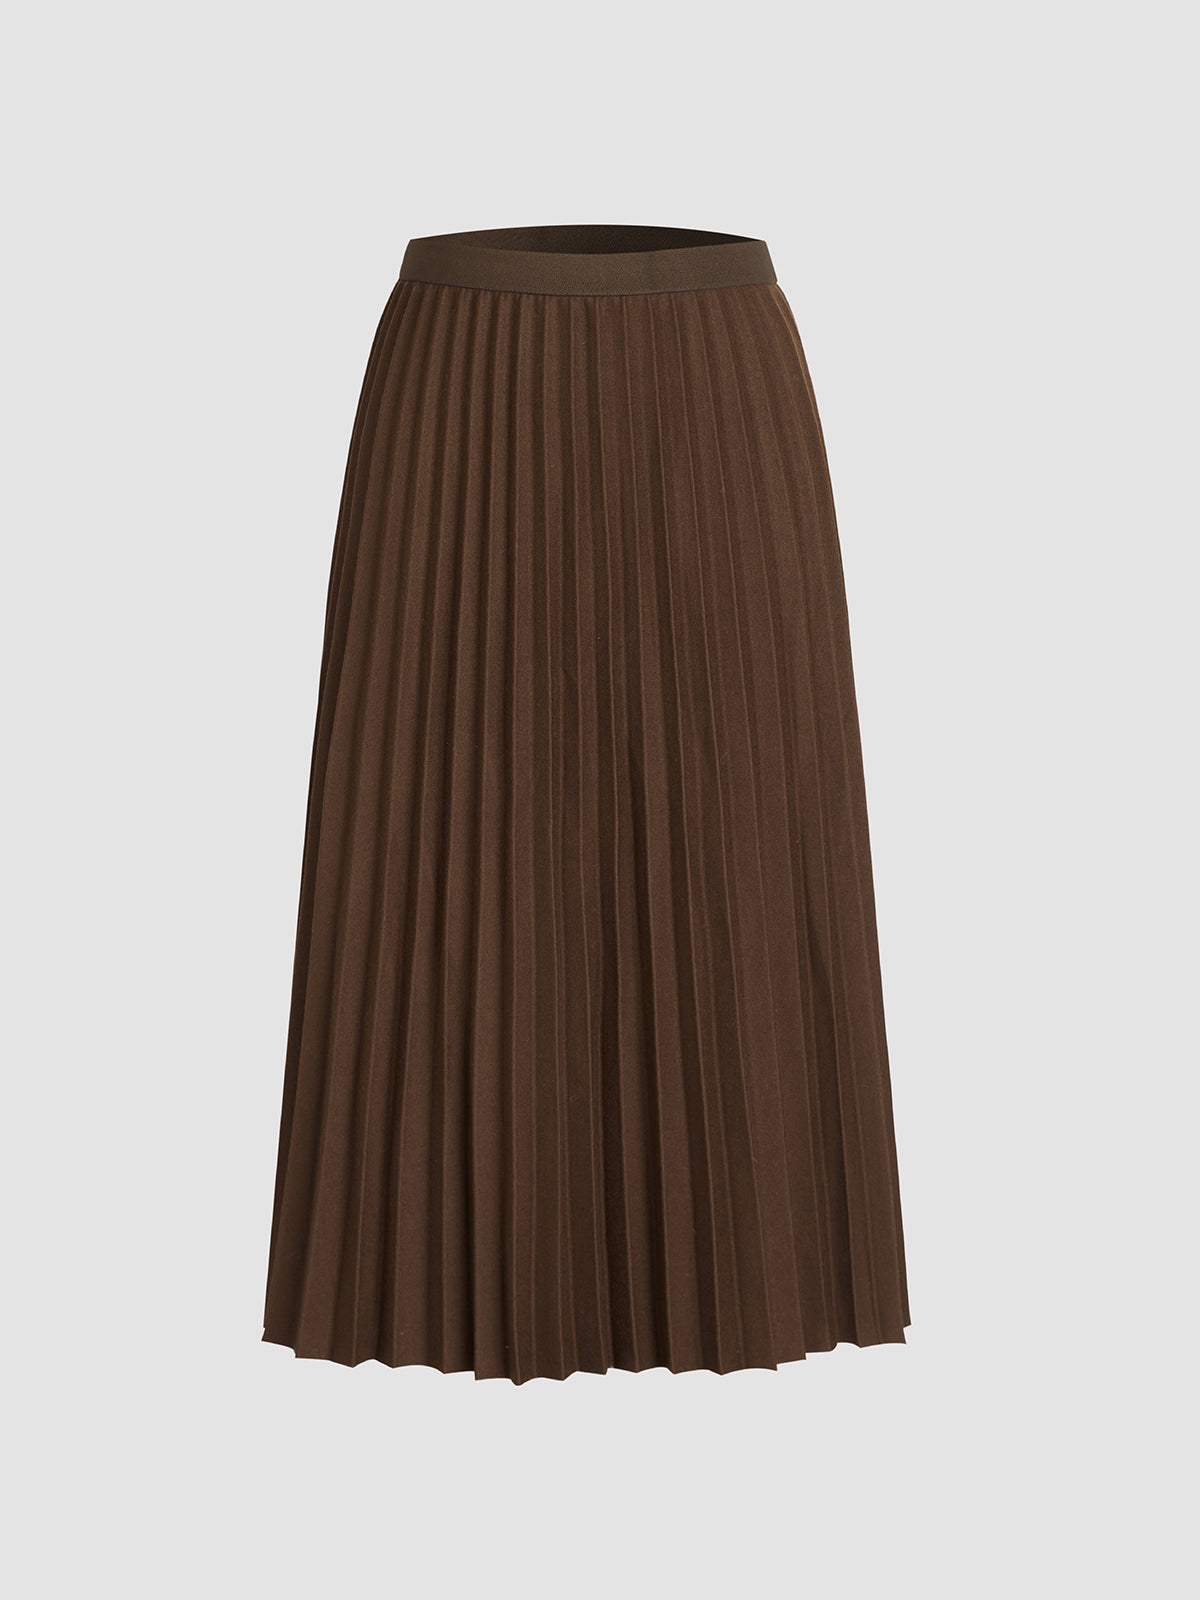 Desert Dream Pleated Long Skirt